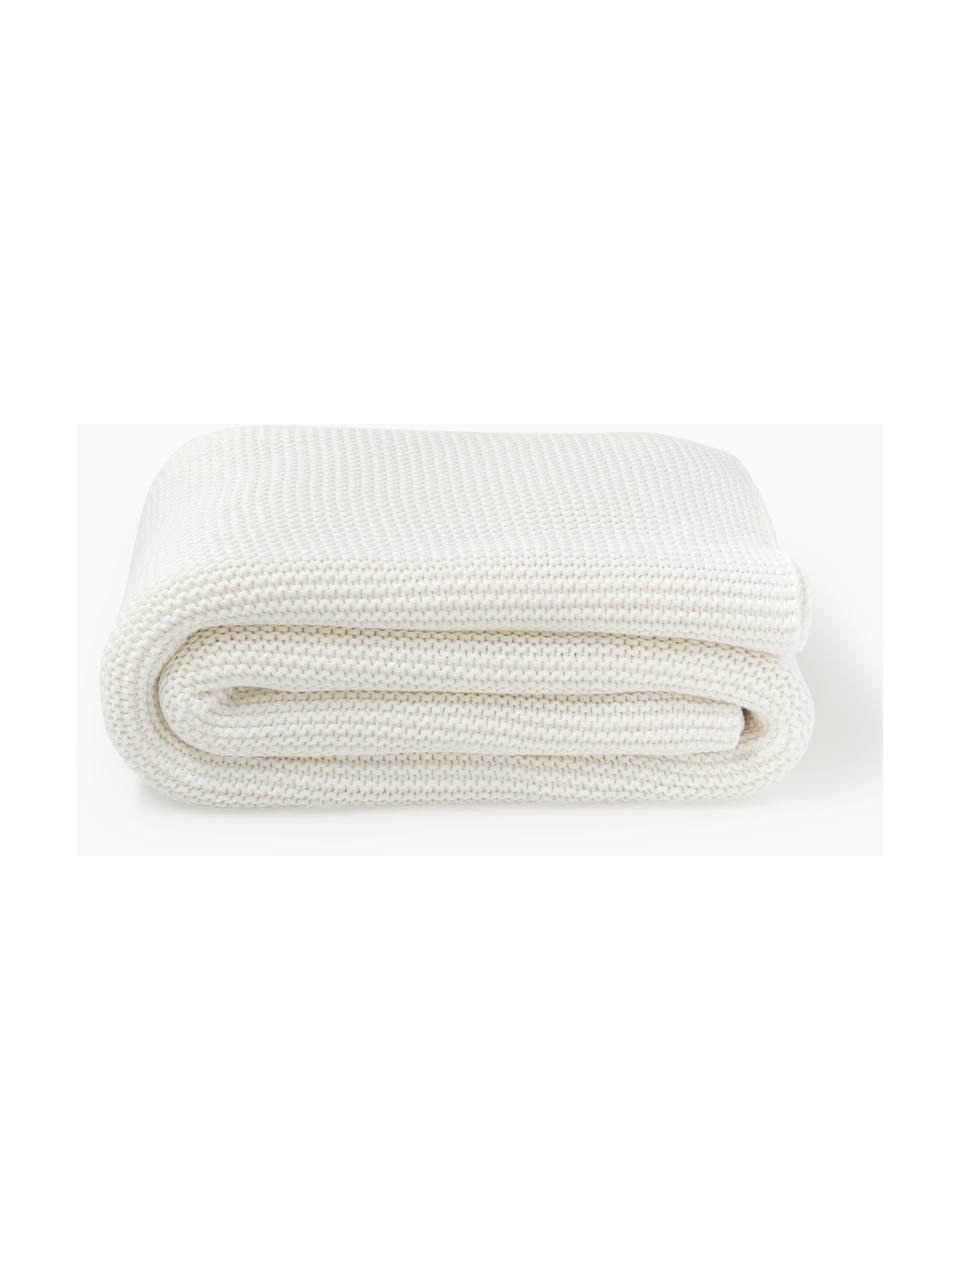 Coperta a maglia in cotone organico Adalyn, 100% cotone organico, certificato GOTS, Bianco latte, Larg. 150 x Lung. 200 cm